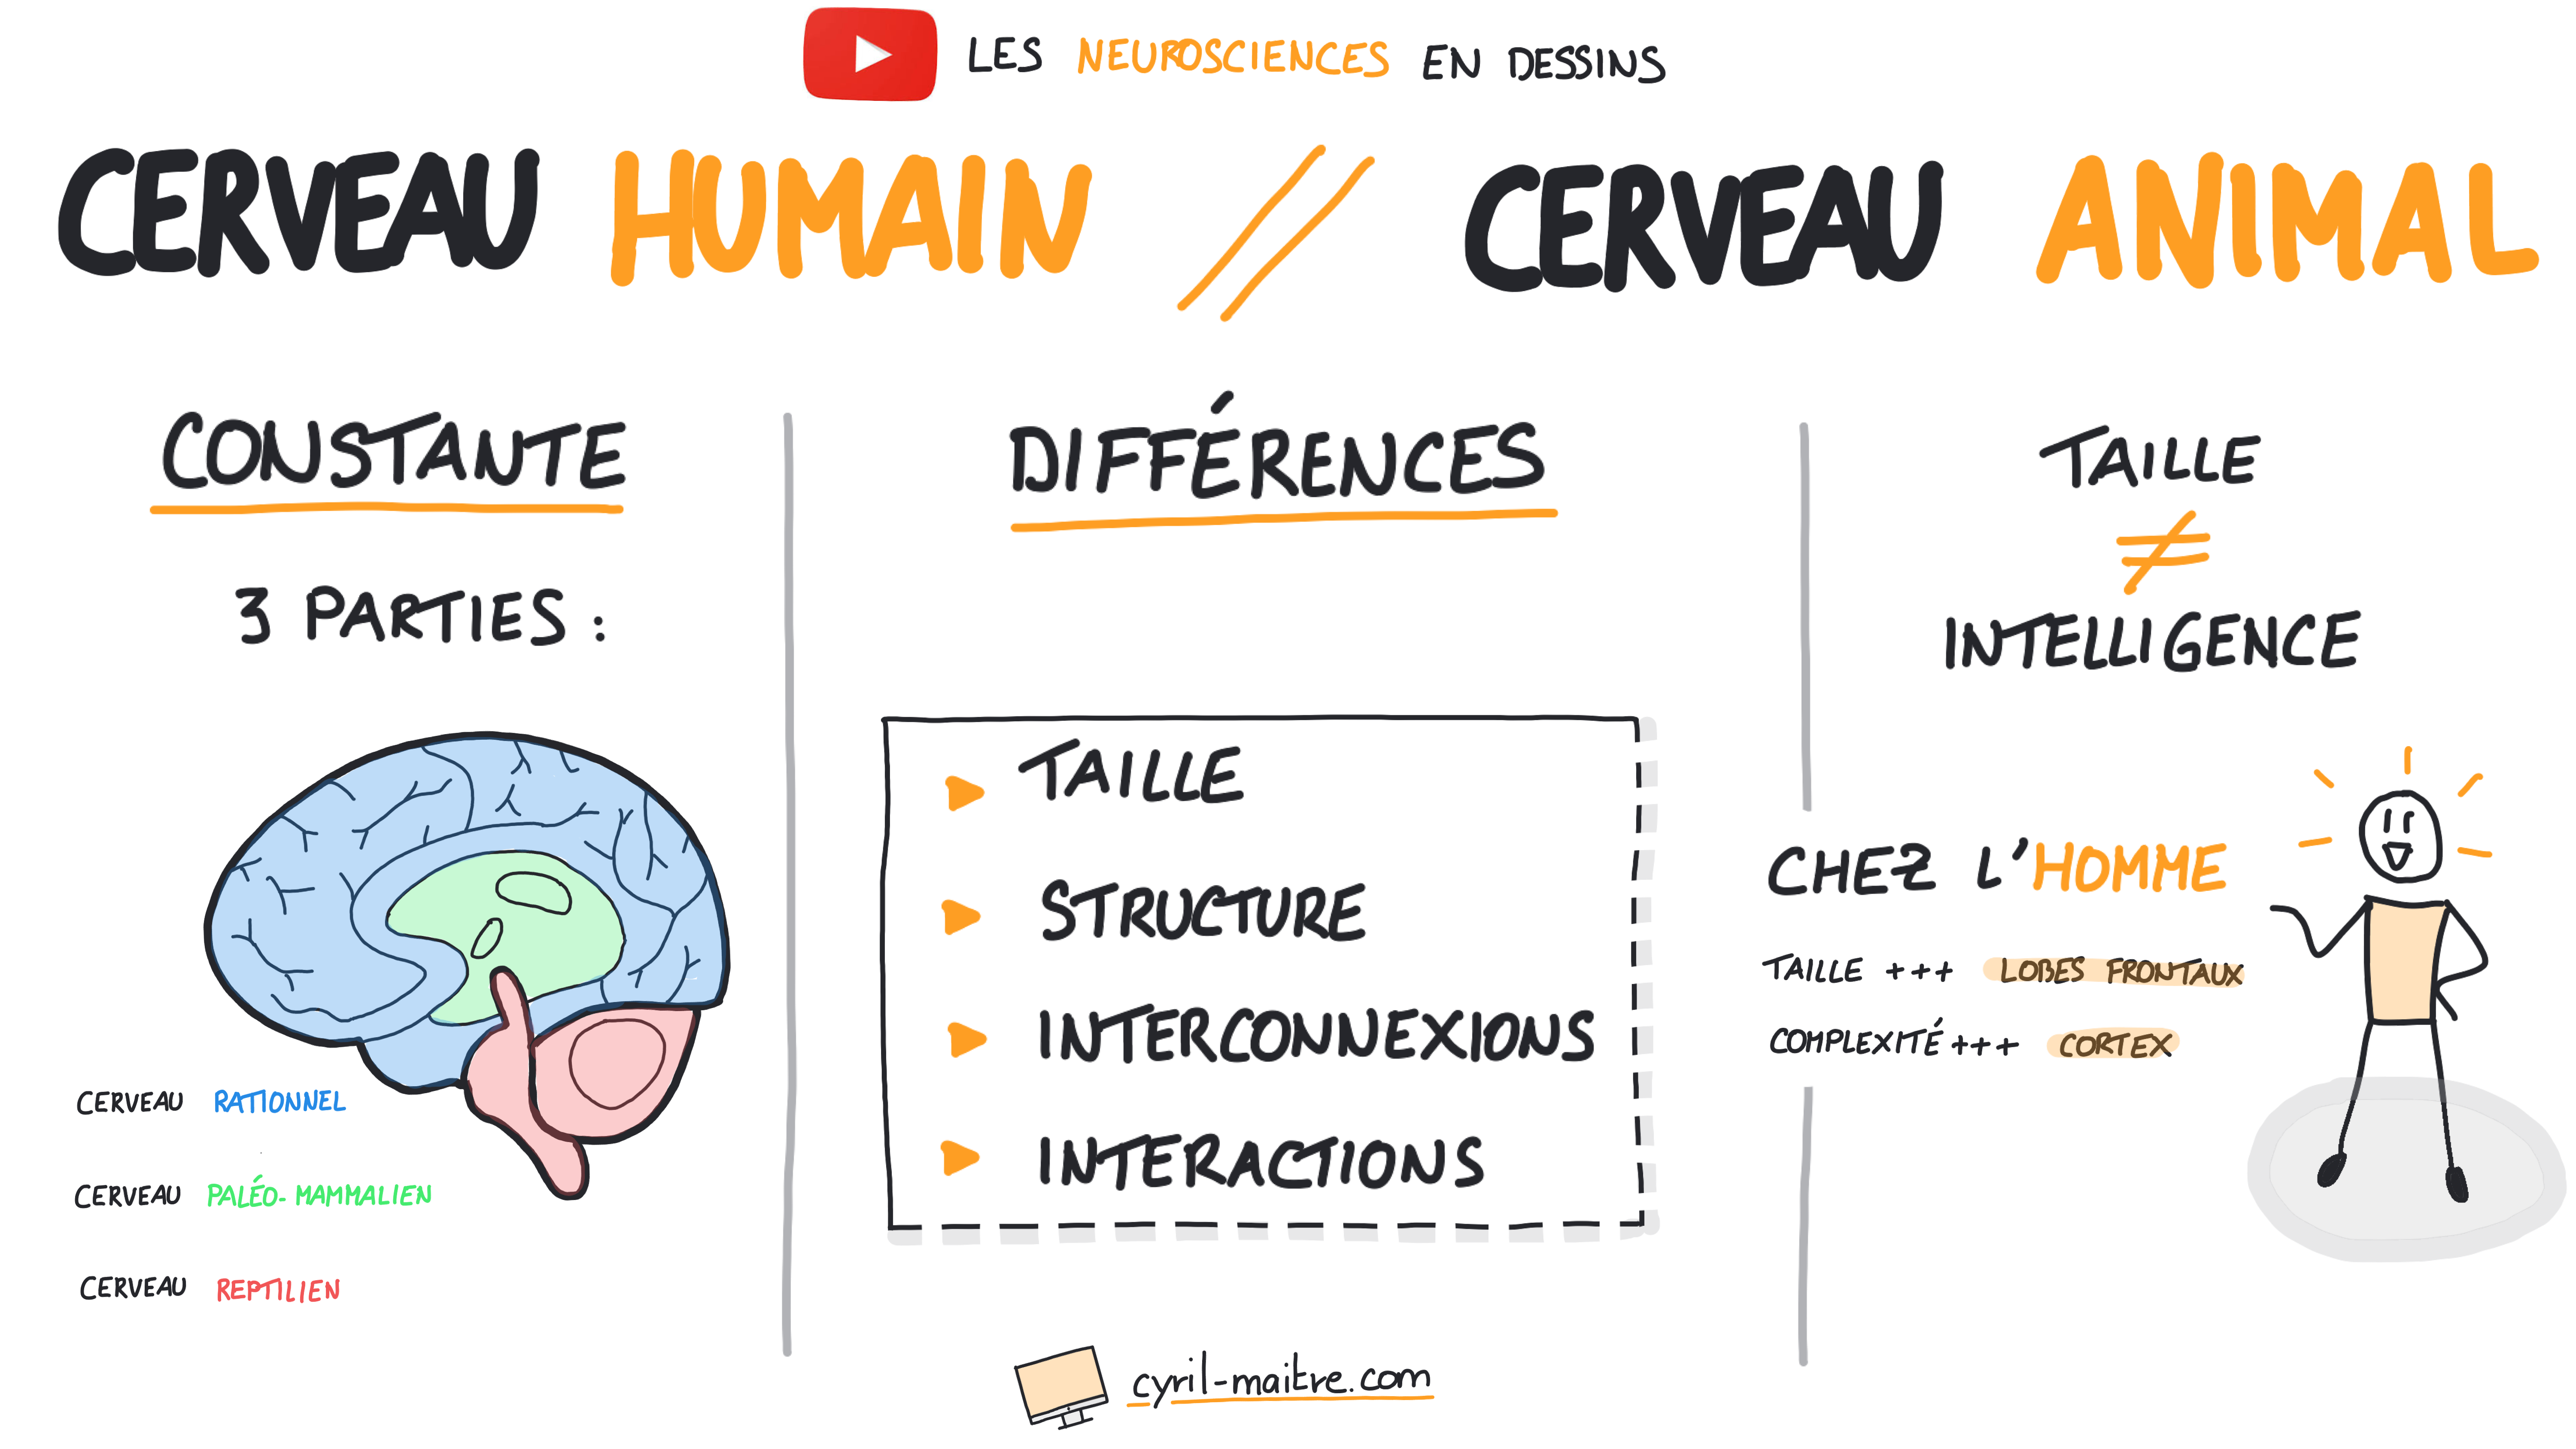 Les différences entre le cerveau humain et le cerveau animal - les neurosciences en dessins